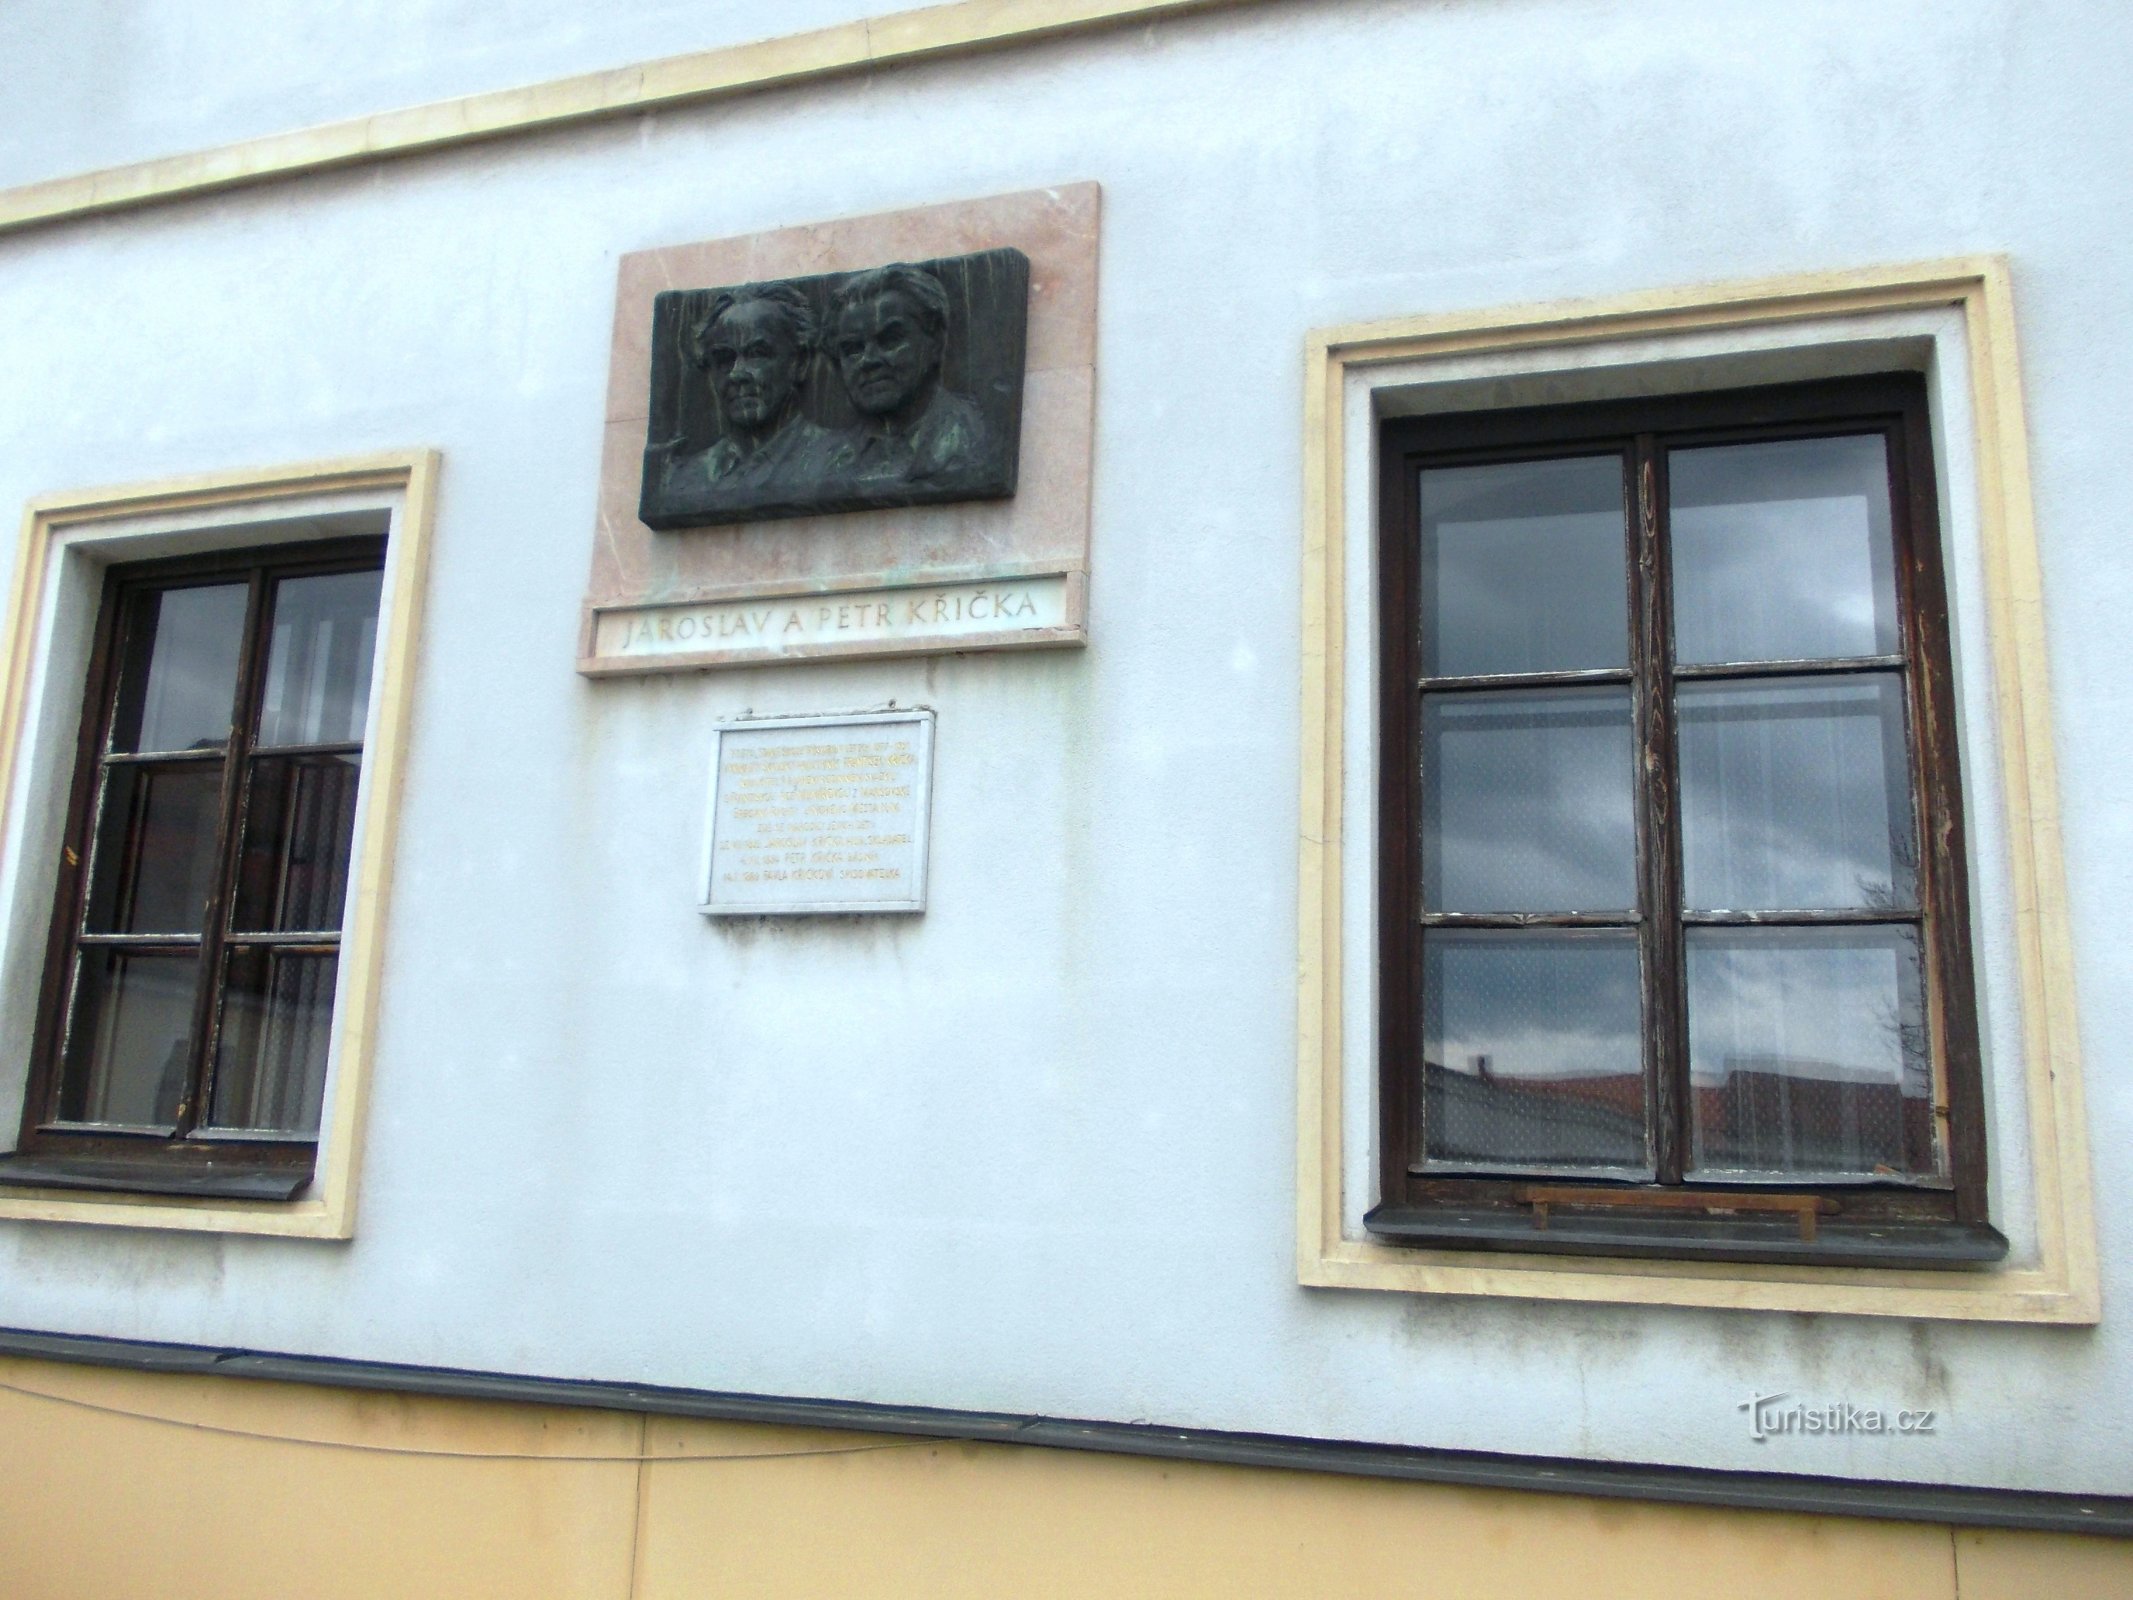 kaksi muistolaatta vanhassa koulurakennuksessa